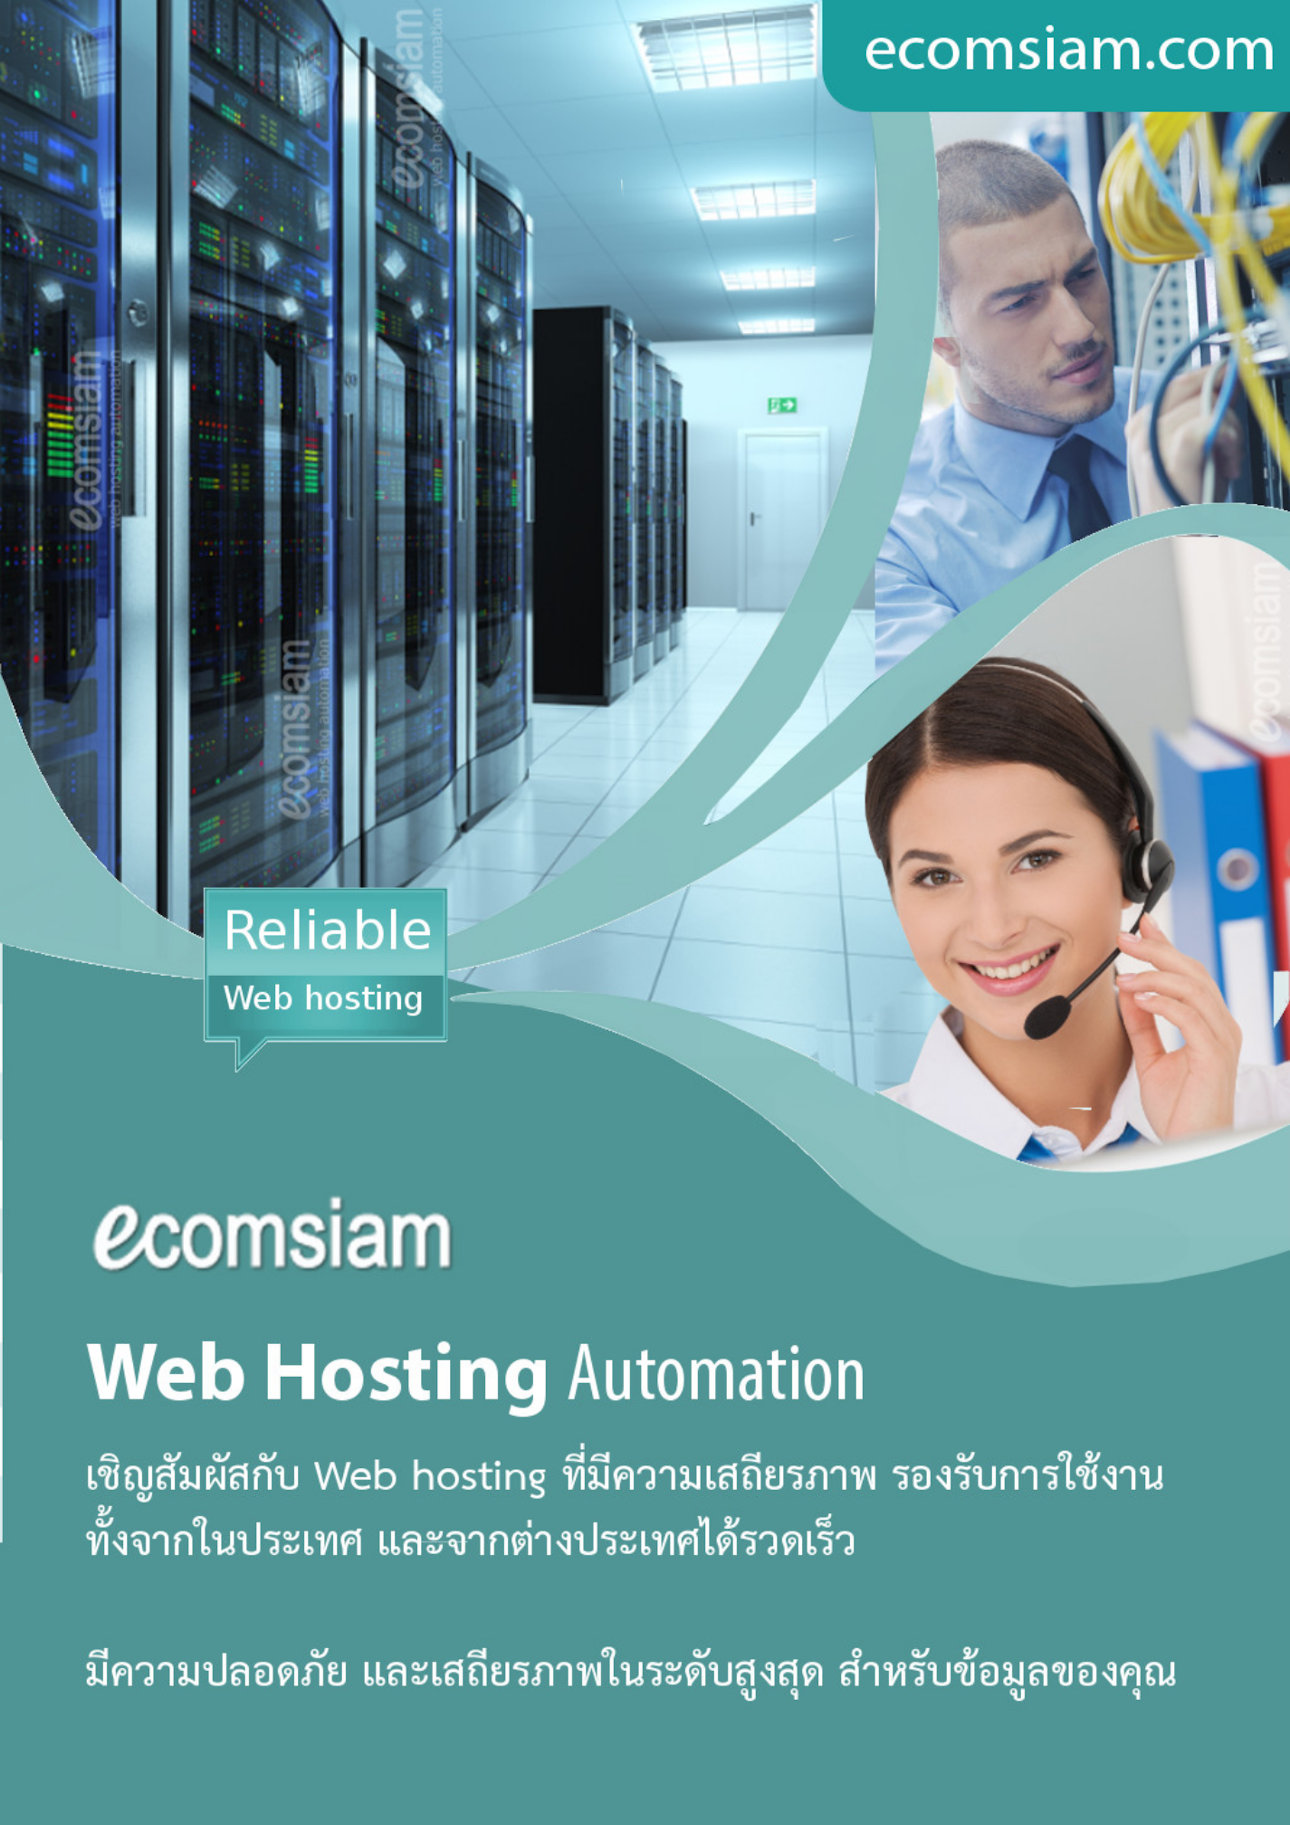 โบรชัวรบริการ  Web Hosting thai คุณภาพ บริการดี พื้นที่มาก  คุณภาพสูง  hosting ฟรีโดเมน ฟรี SSL ระบบควบคุมจัดการ Web hosting ไทย ที่ง่าย สะดวก และปลอดภัย อีเมลและเว็บไซต์สำหรับธุรกิจของคุณ มีระบบเก็บ log file ตามกฏหมาย มีความปลอดภัยในการใช้งาน พร้อมมีระบบสำรองข้อมูลรายวัน (daily backup) และ สำรองข้อมูลรายสัปดาห์ (weekly backup) ระบบป้องกันไวรัสจากอีเมล์ (virus protection) พร้อมระบบกรองสแปมส์เมล์หรือกรองอีเมล์ขยะ (Spammail filter) เริ่มต้นเพียง 1600 บาทต่อปี  โทร.หาเราตอนนี้เลย  02-9682665   บริการลูกค้าดี ดูแลดี  แนะนำเว็บโฮสติ้ง โดย ecomsiam.com